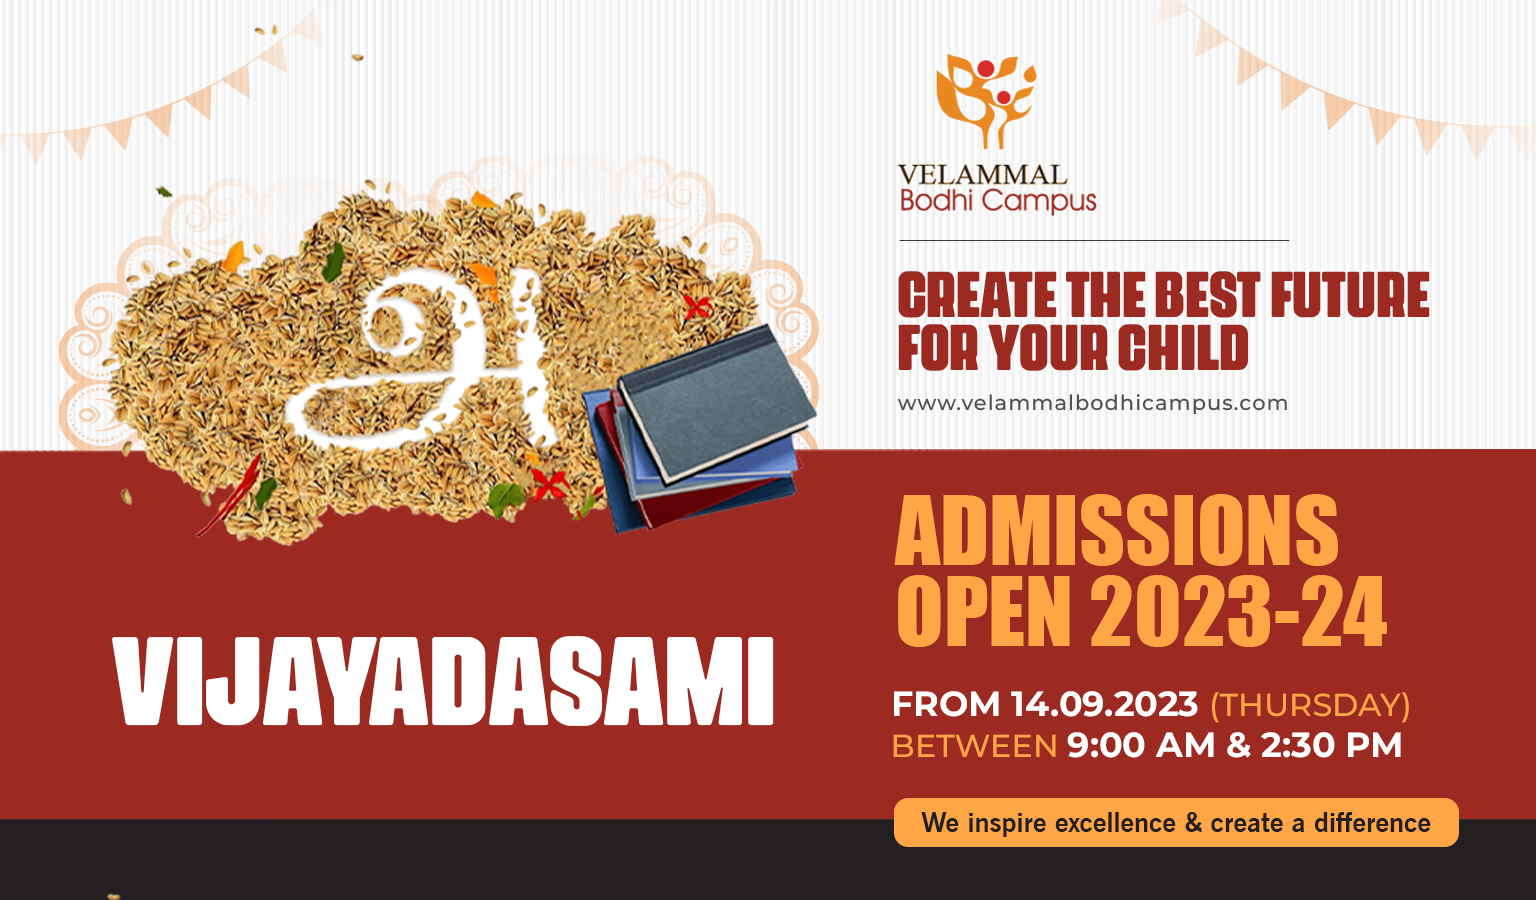 Velammal Bodhi Campus - Admissions Open